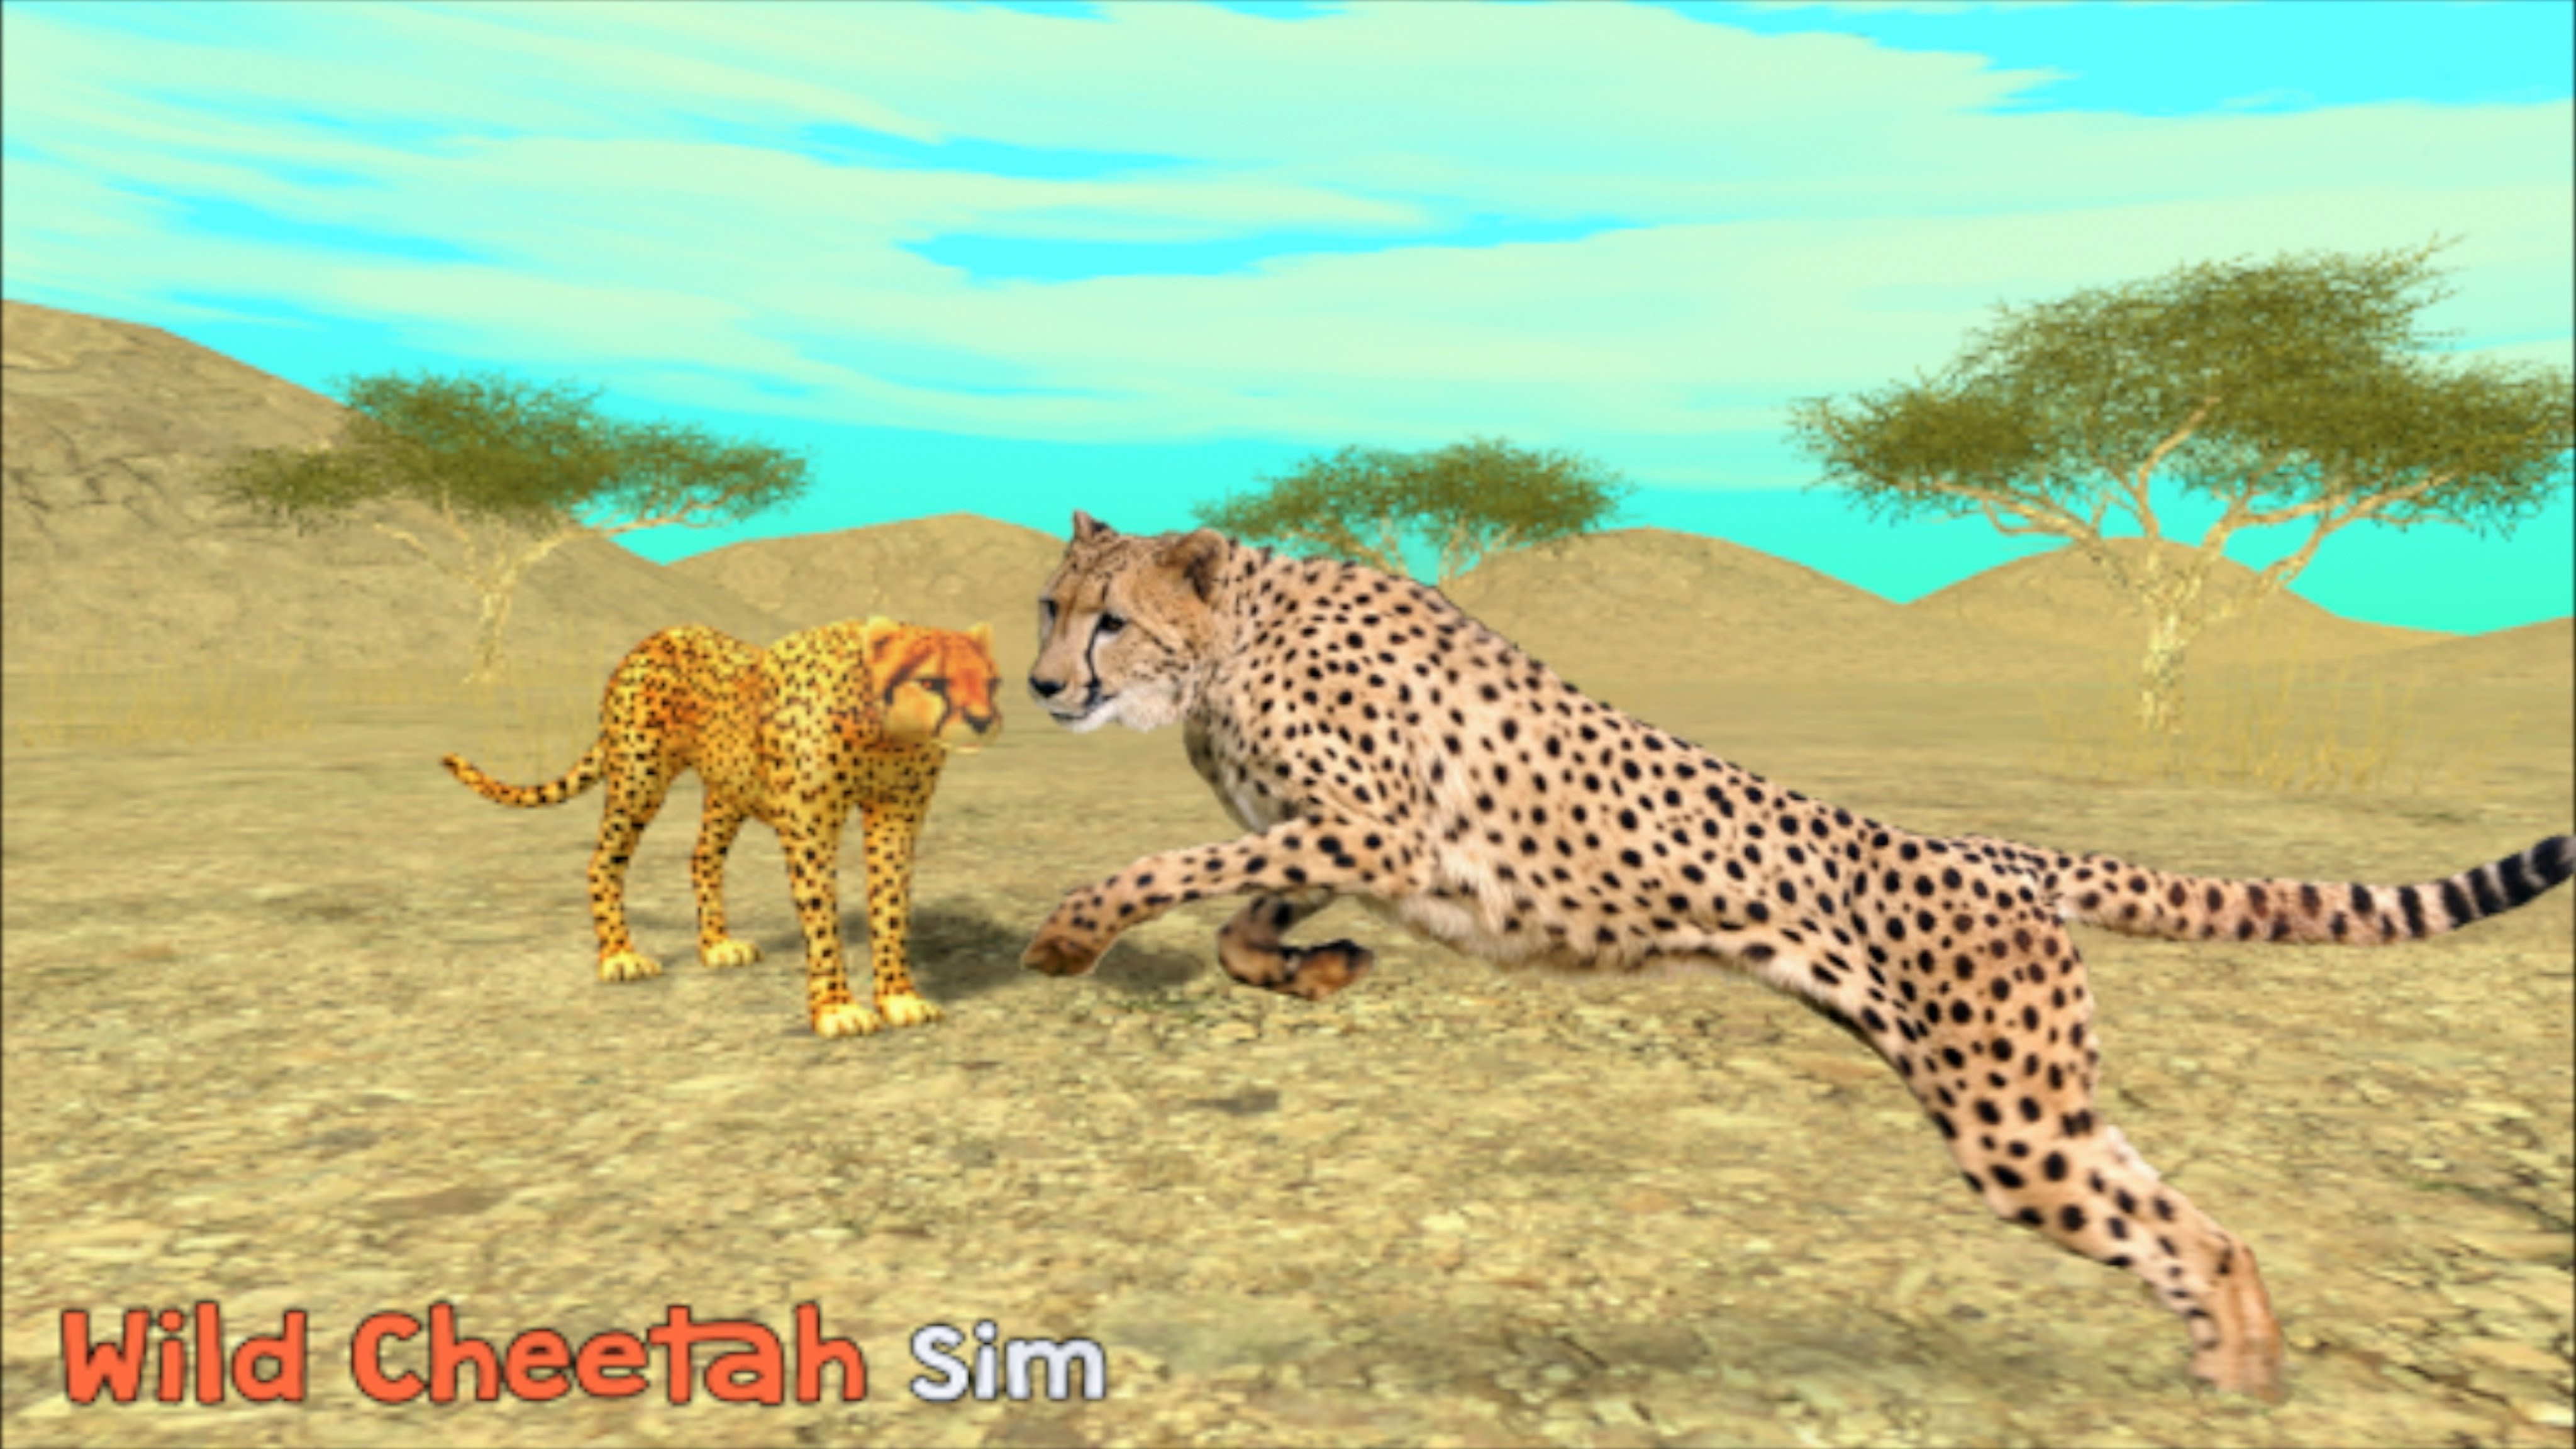 Wild cheetah photo